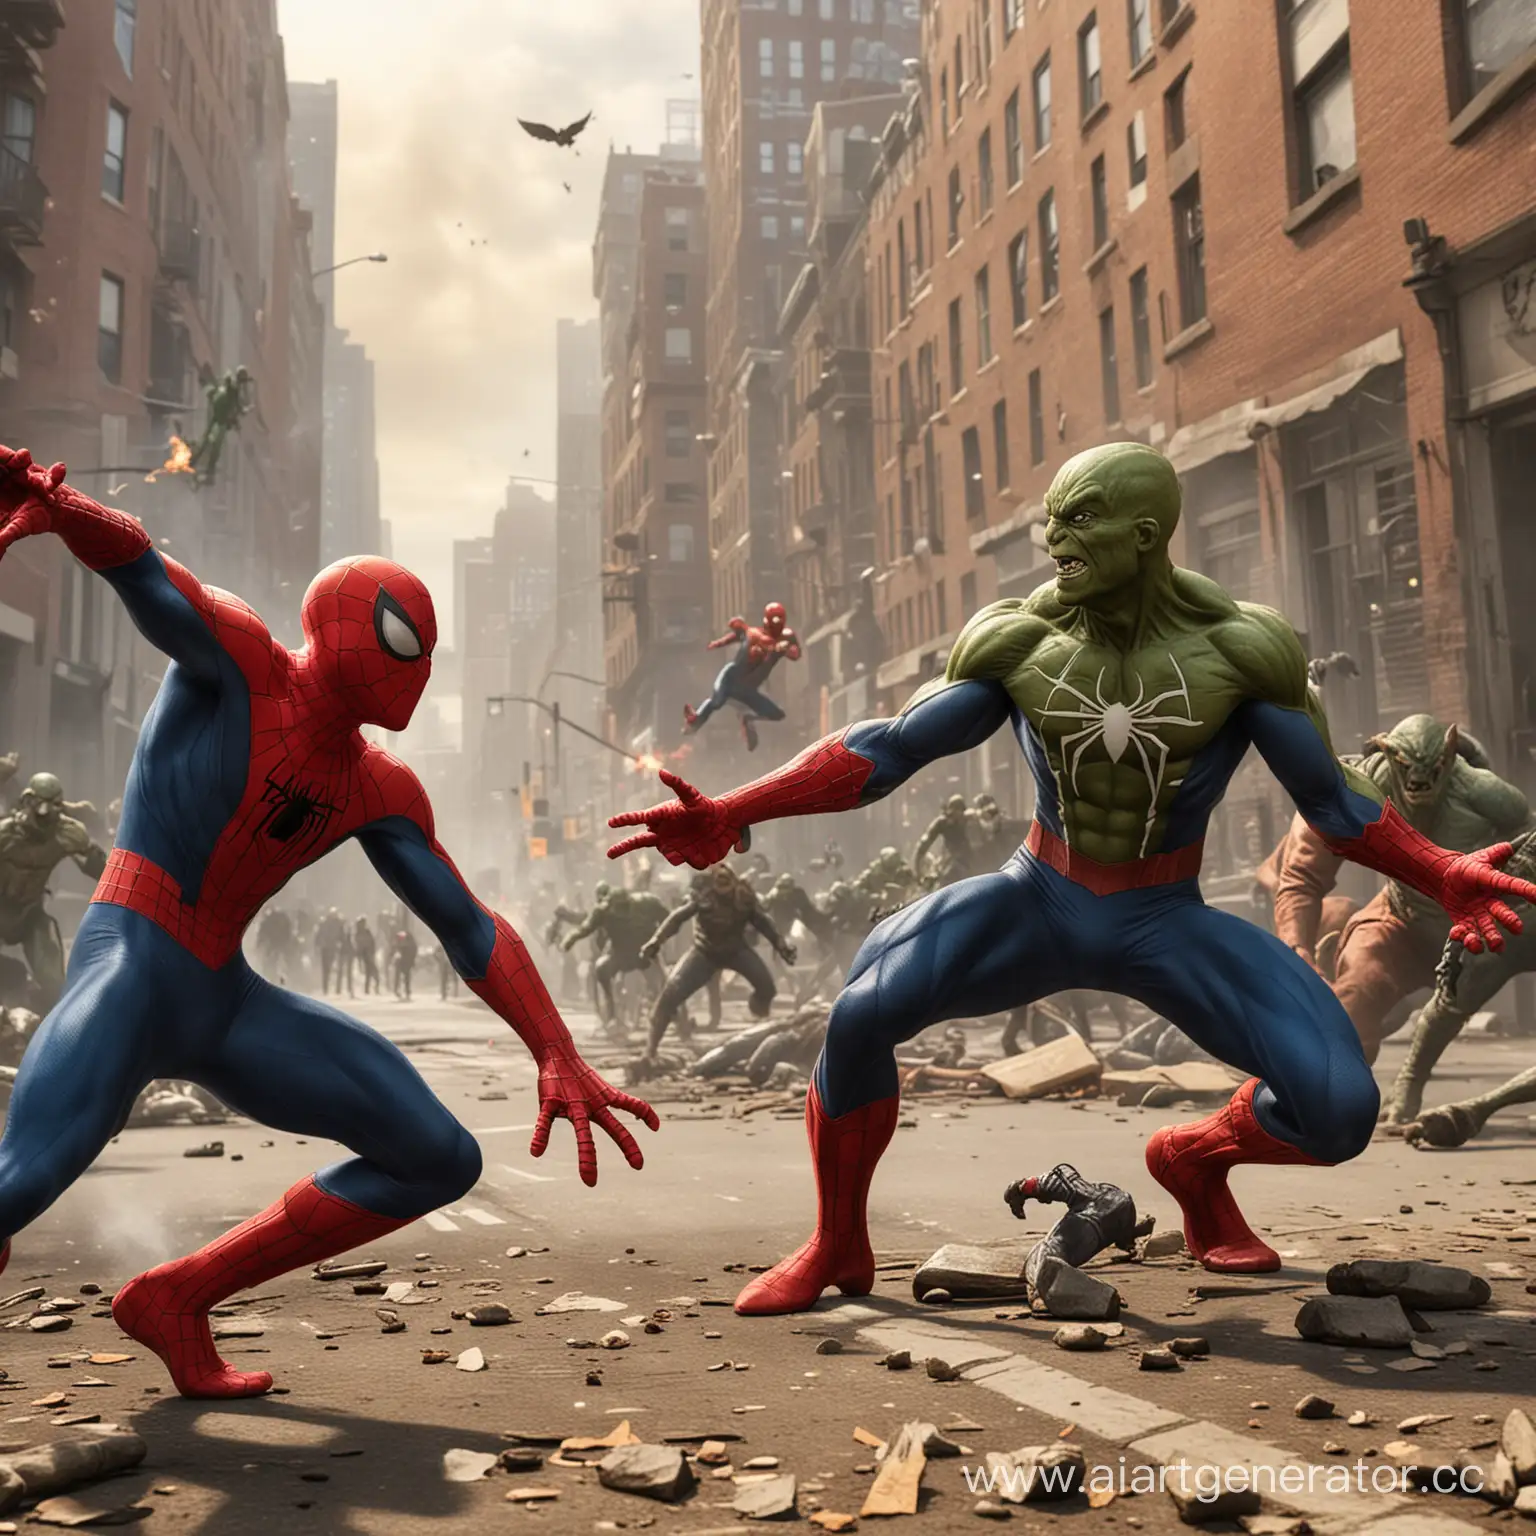 SpiderMan-Confronts-Green-Goblin-in-Epic-Skyscraper-Showdown